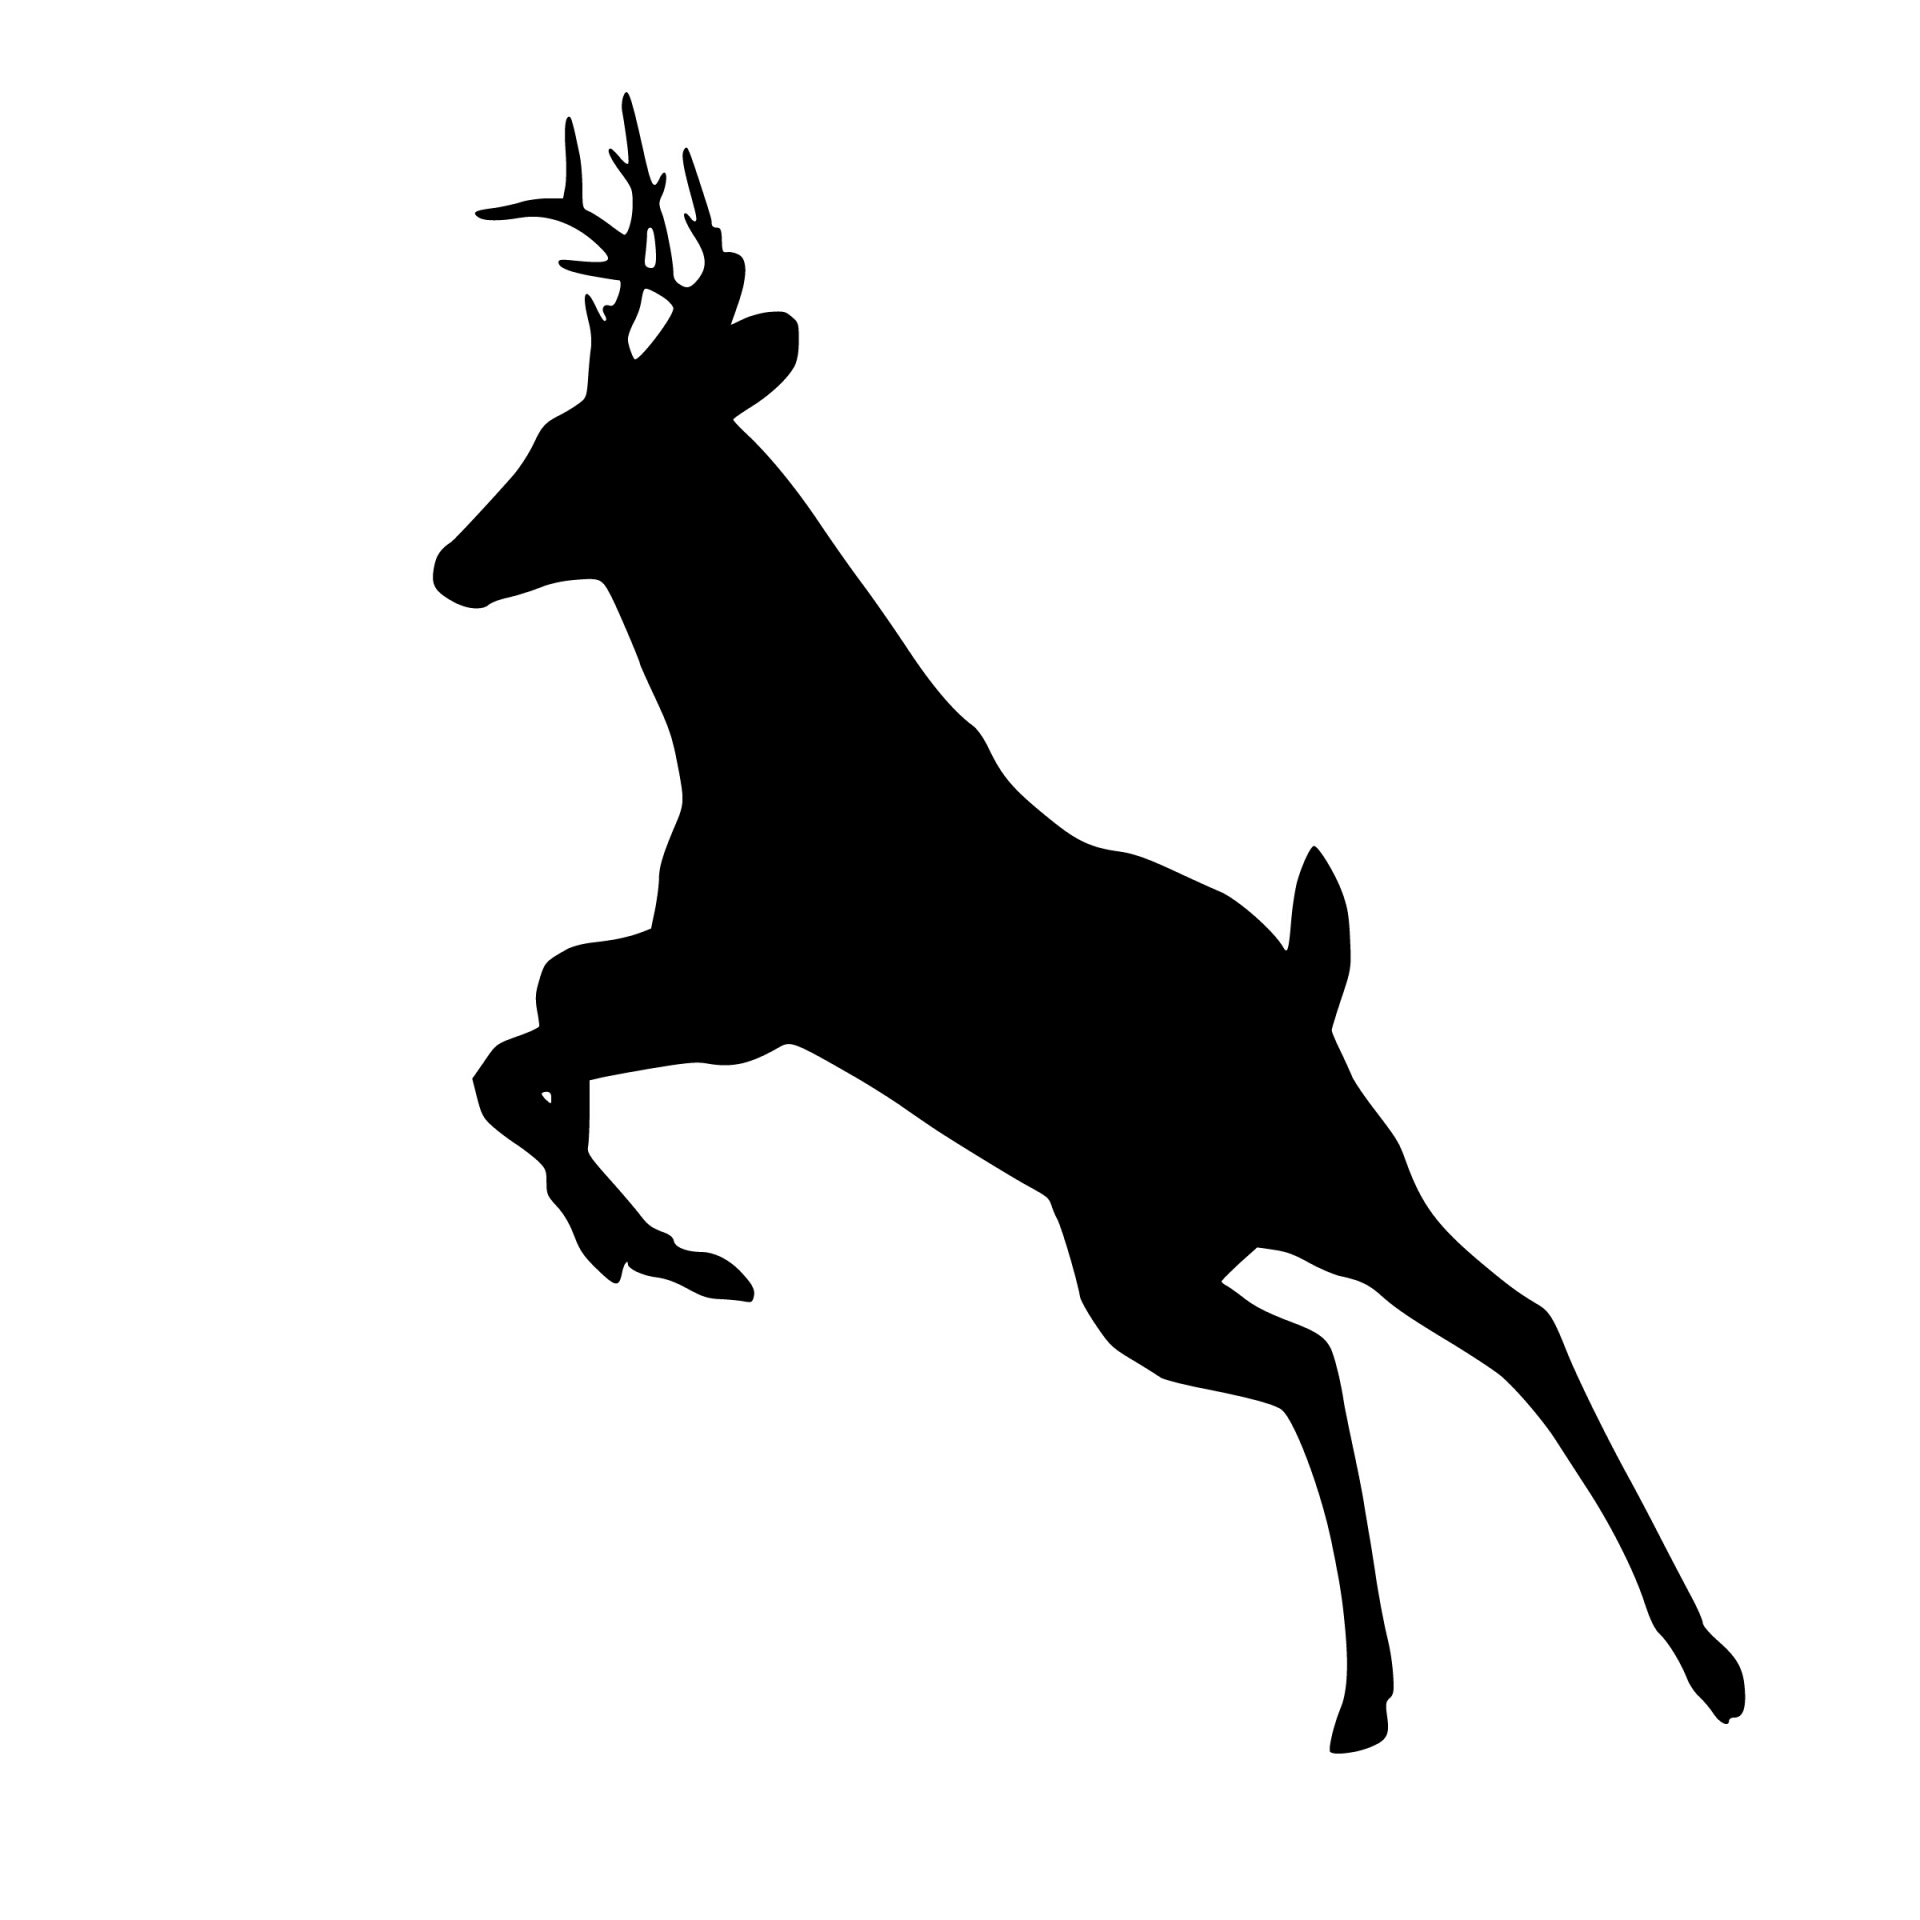 Deer, Jumping, Silhouette, Animal,